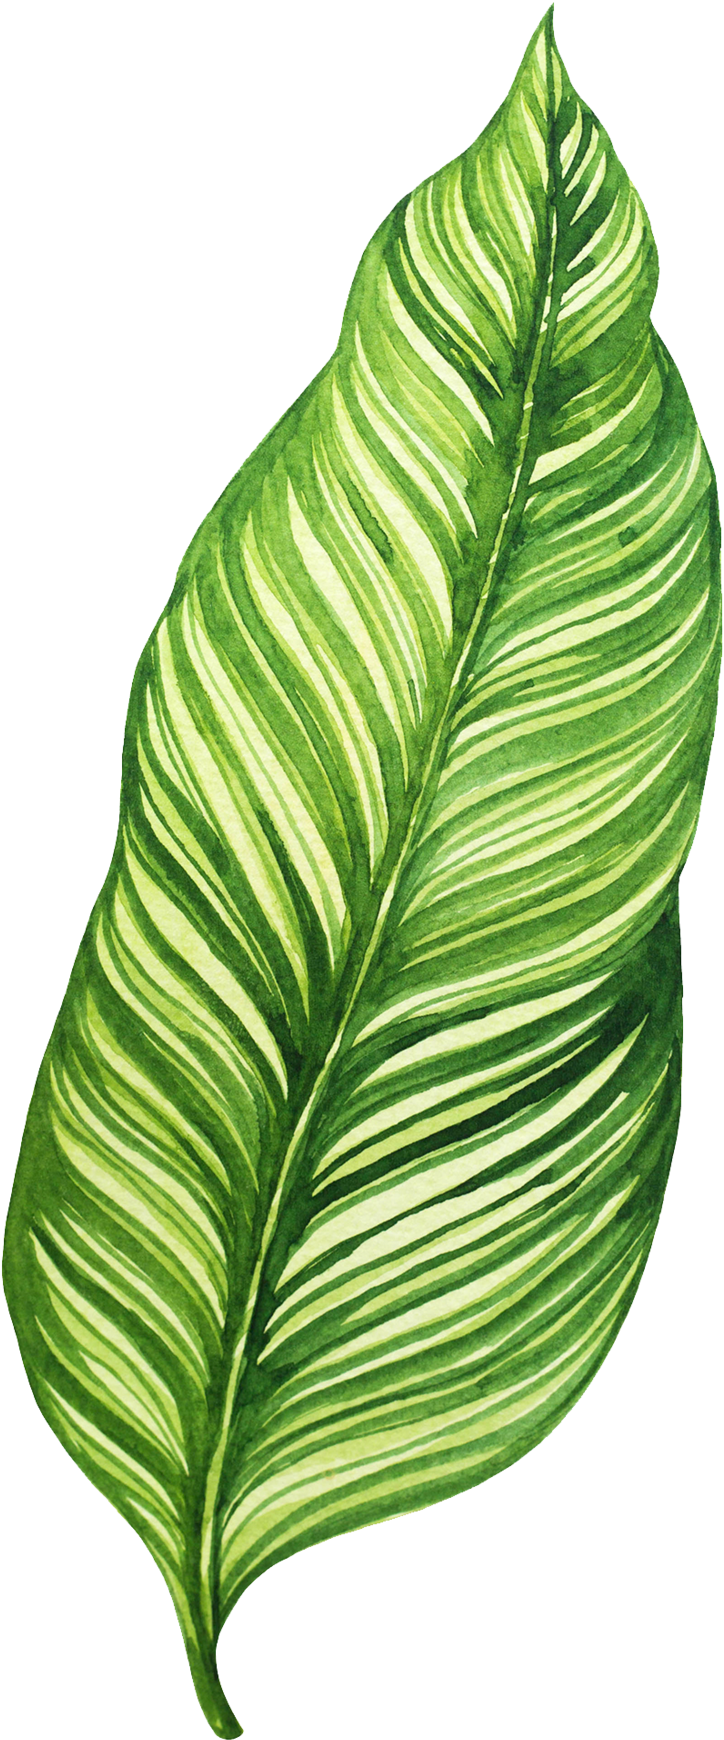 Vibrant Green Banana Leaf Illustration PNG